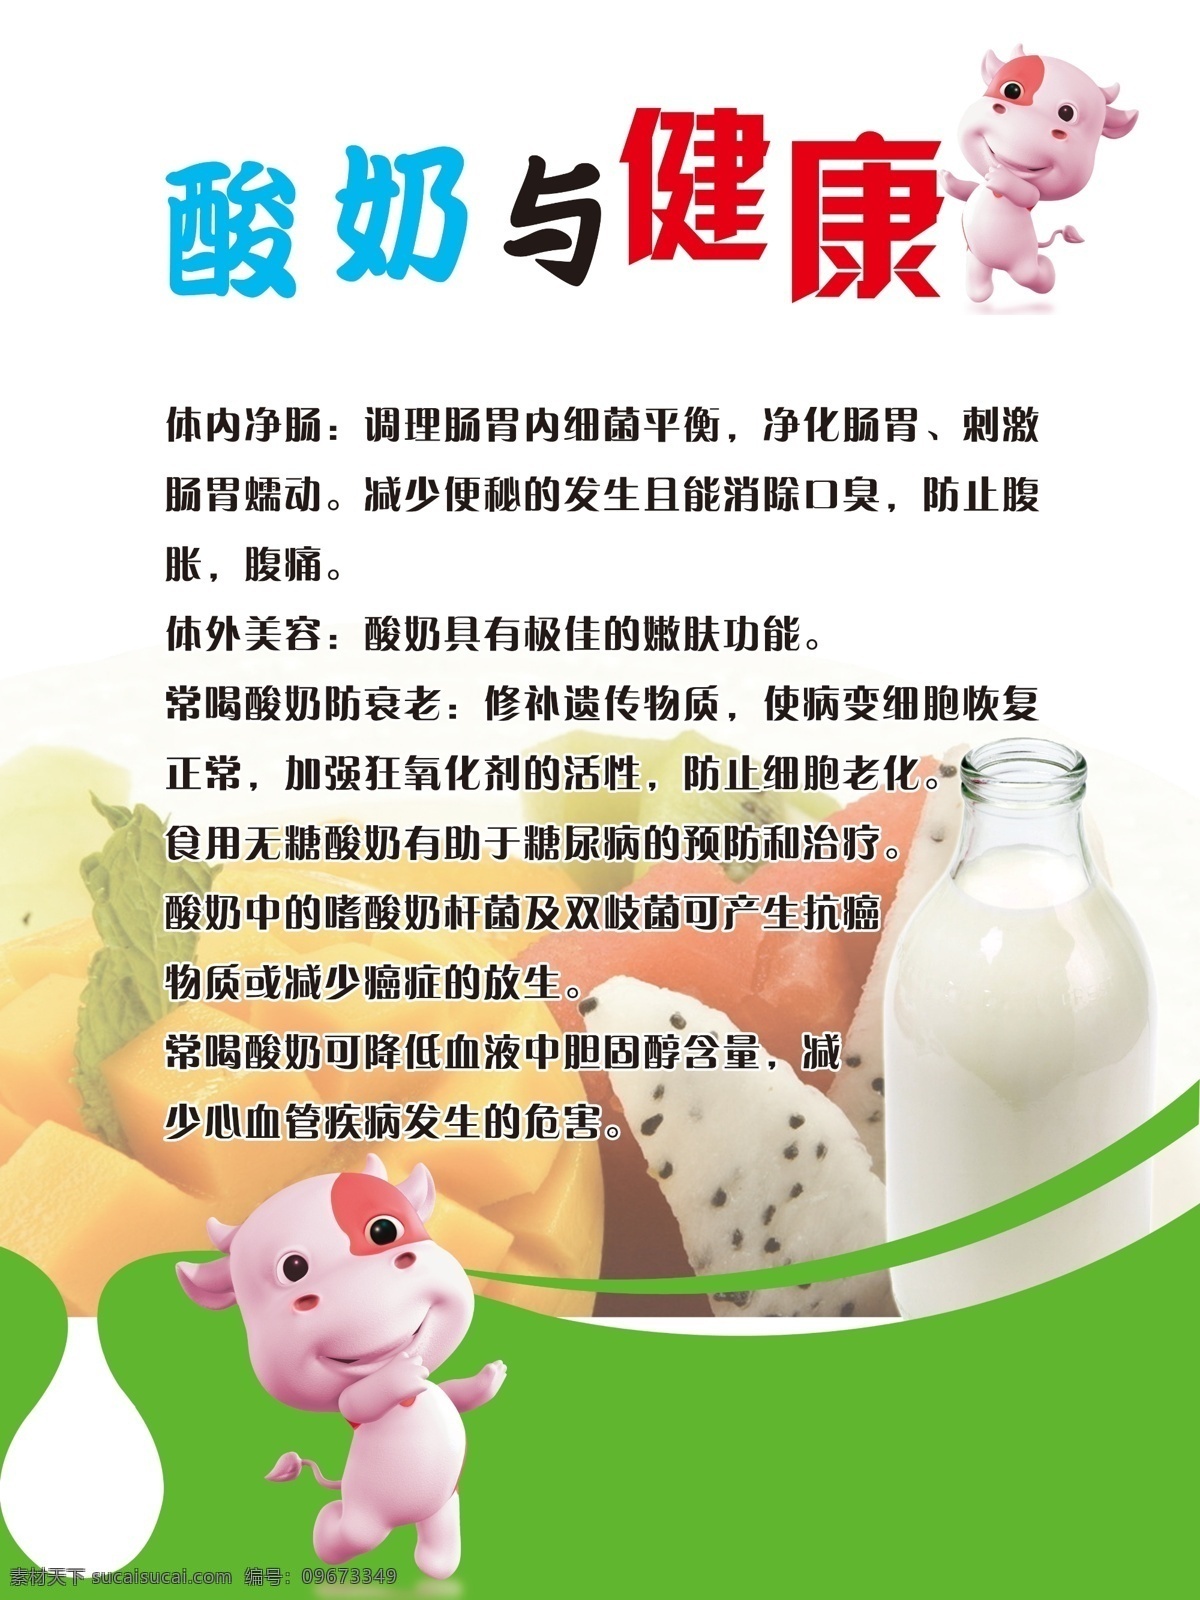 酸奶 广告设计模板 健康 牛 牛奶 酸奶素材下载 鲜奶 酸奶模板下载 源文件 psd源文件 餐饮素材